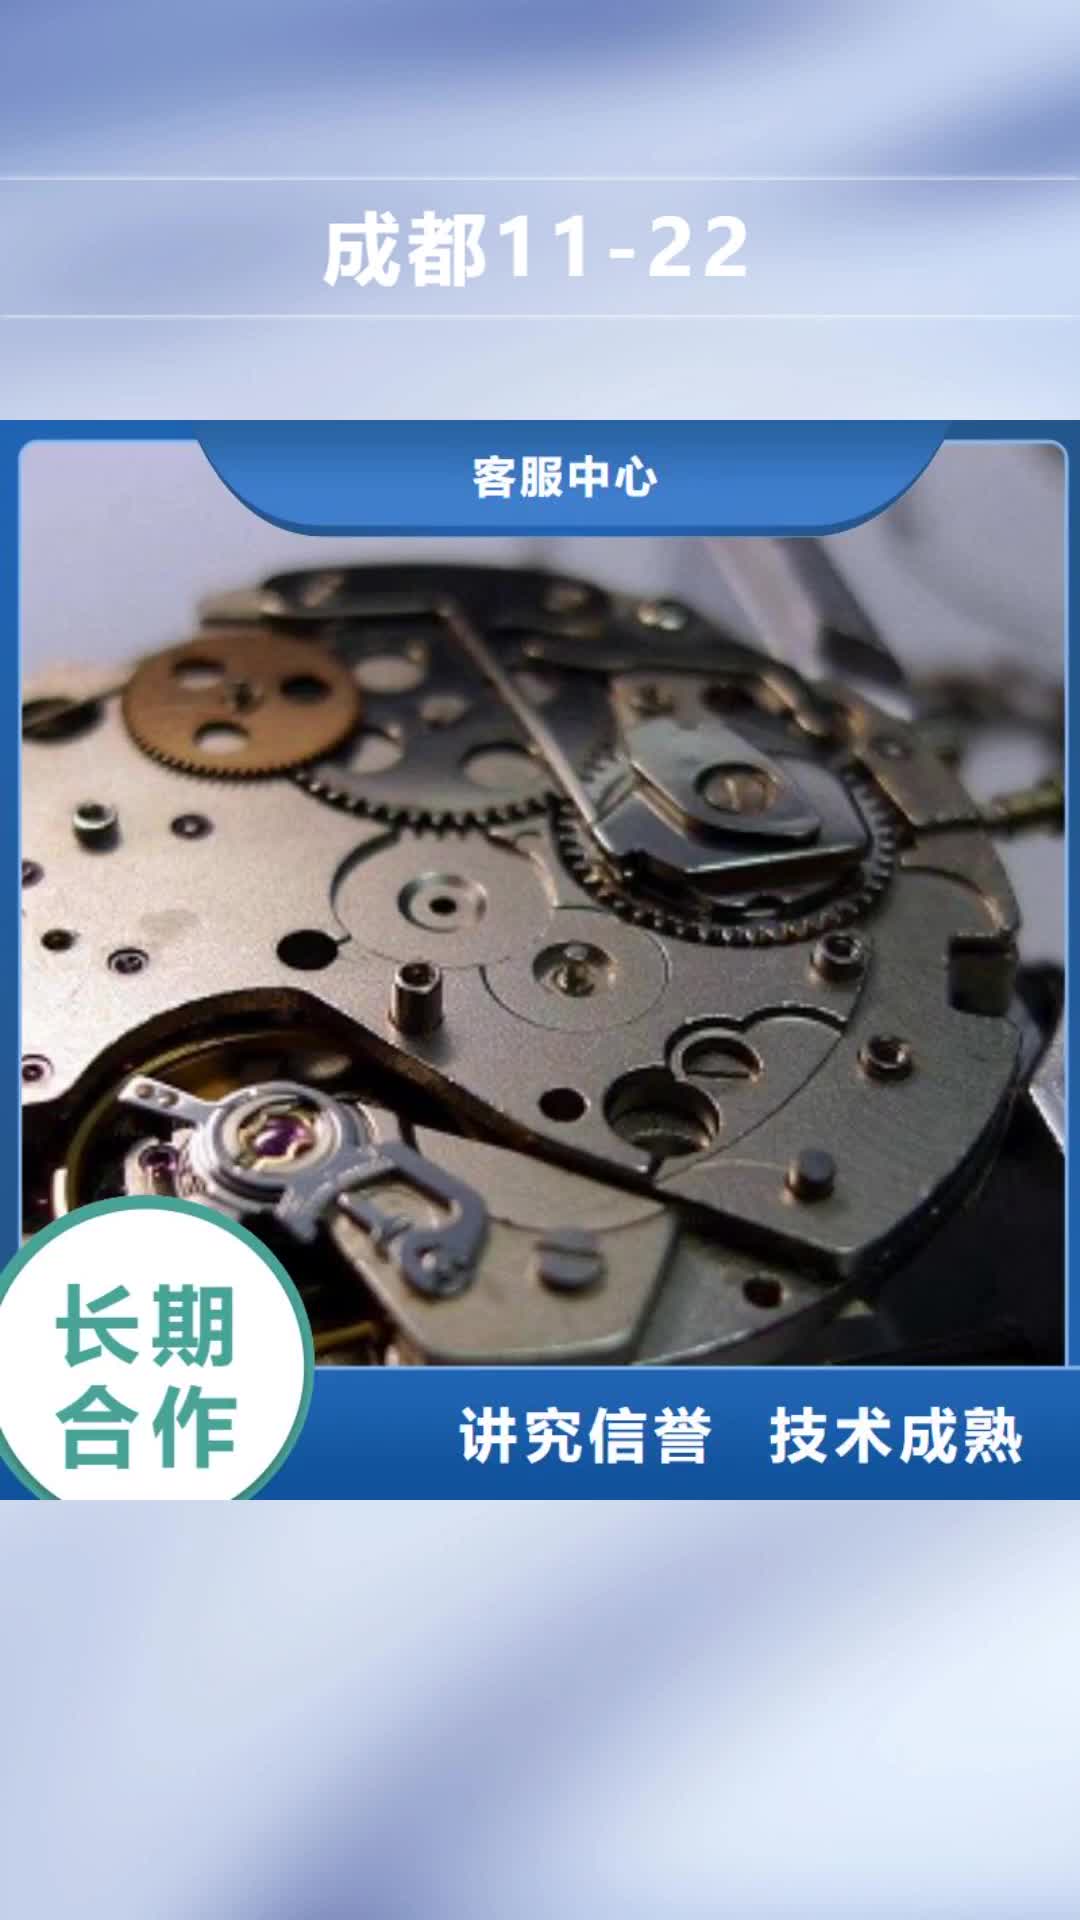 镇江【成都11-22】,春熙路手表维修技术比较好